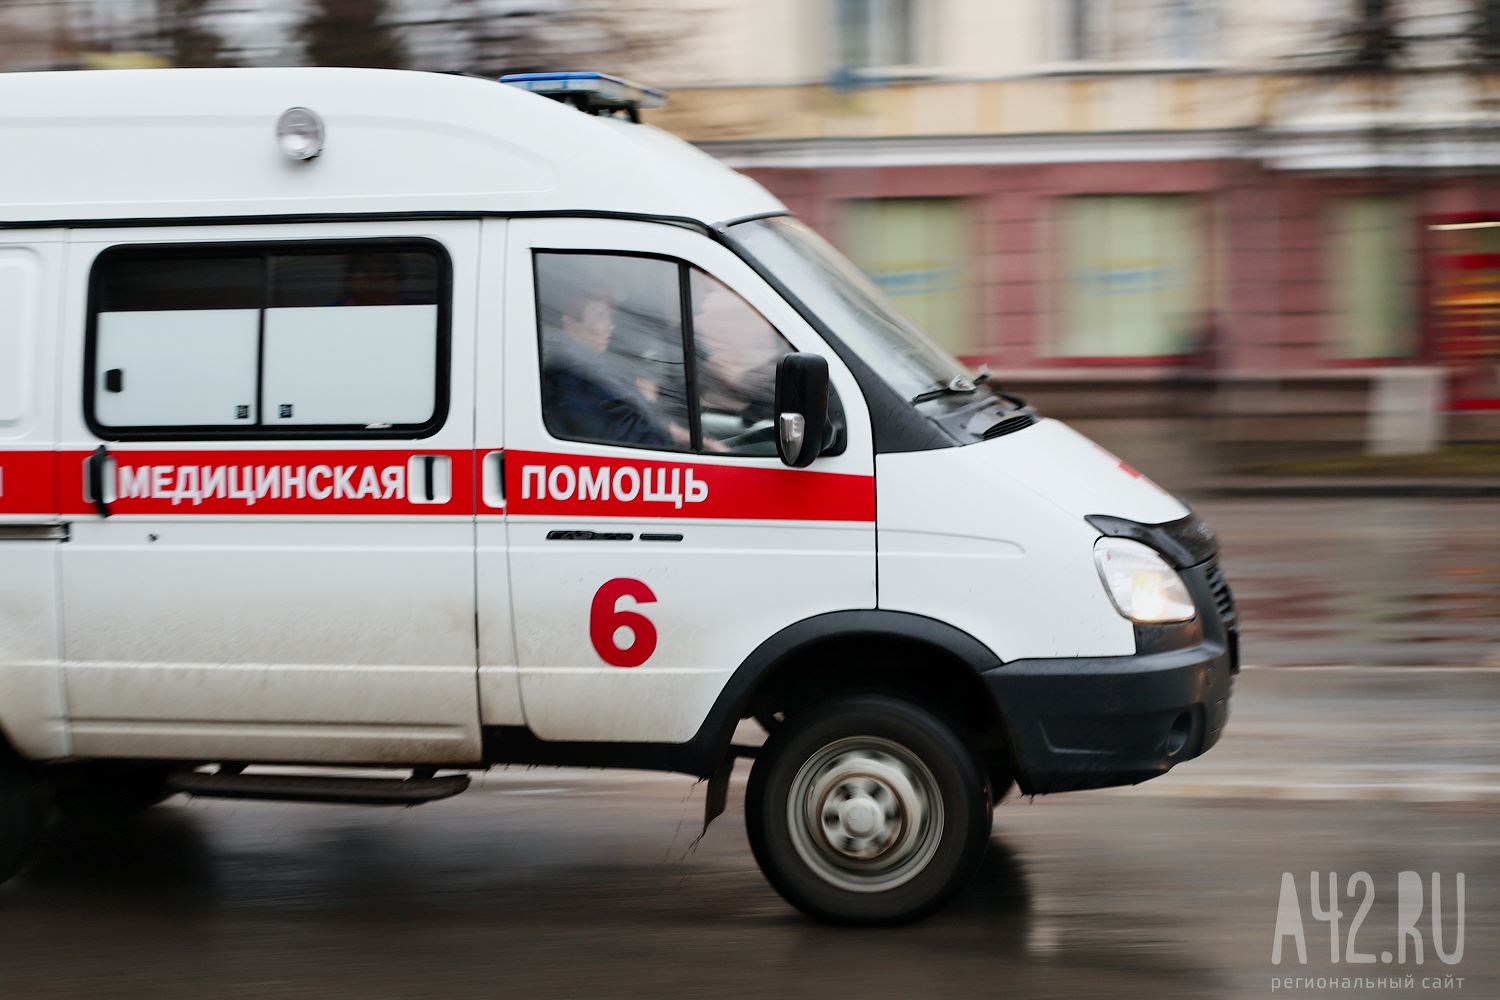 Трое погибли, двое травмированы: полиция озвучила подробности смертельного ДТП в Кемерове